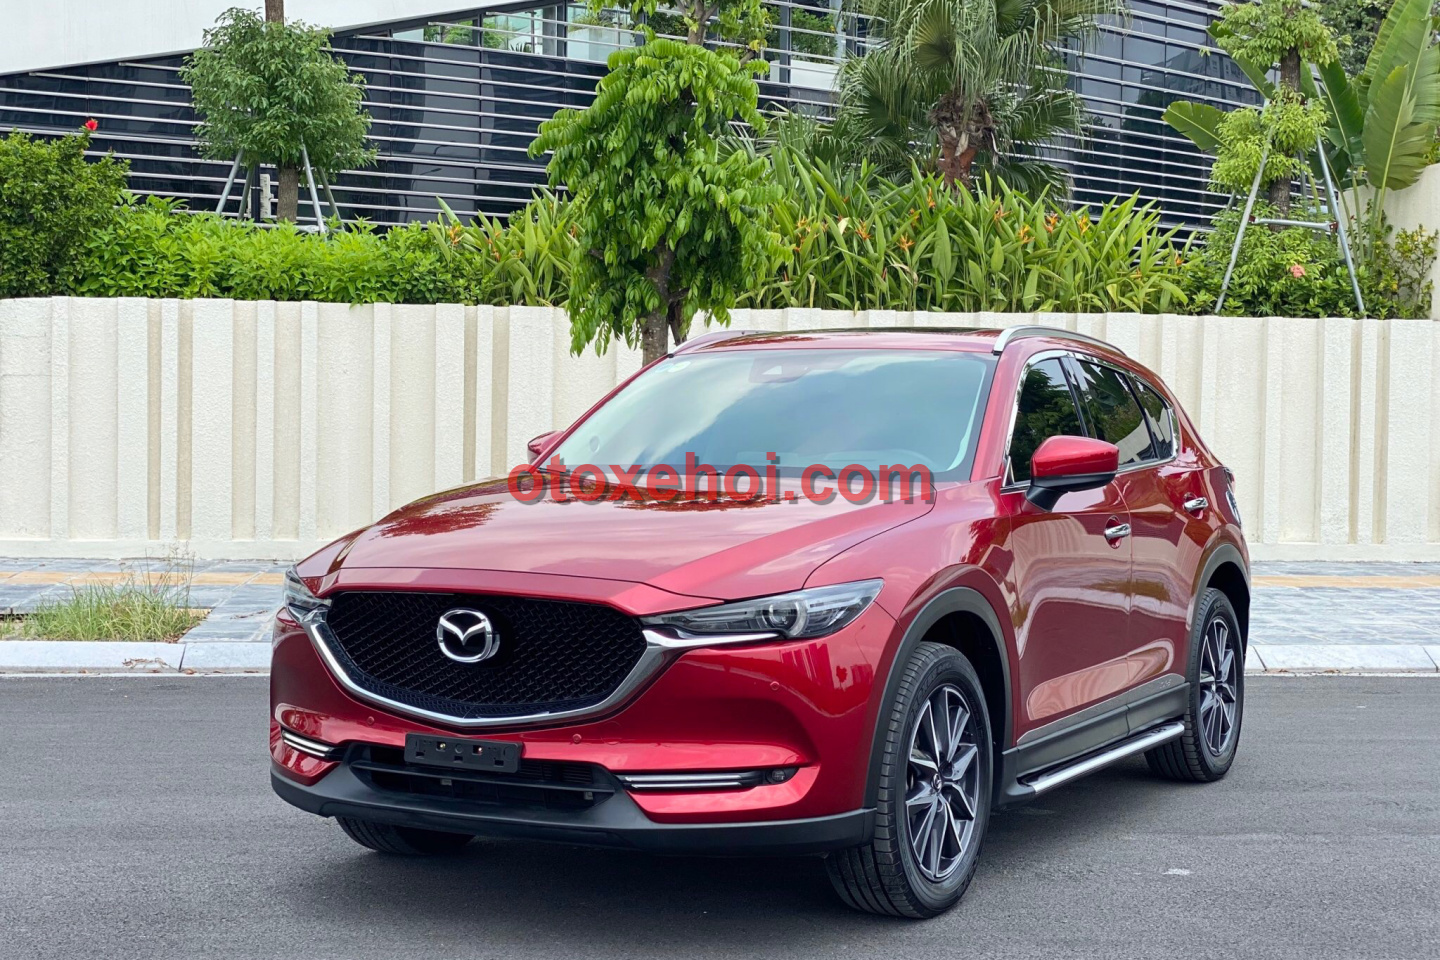 Giá bán xe ô tô Mazda CX-5 2.5 Xe cũ Số tự động tại otoxehoi.com | Mua ...